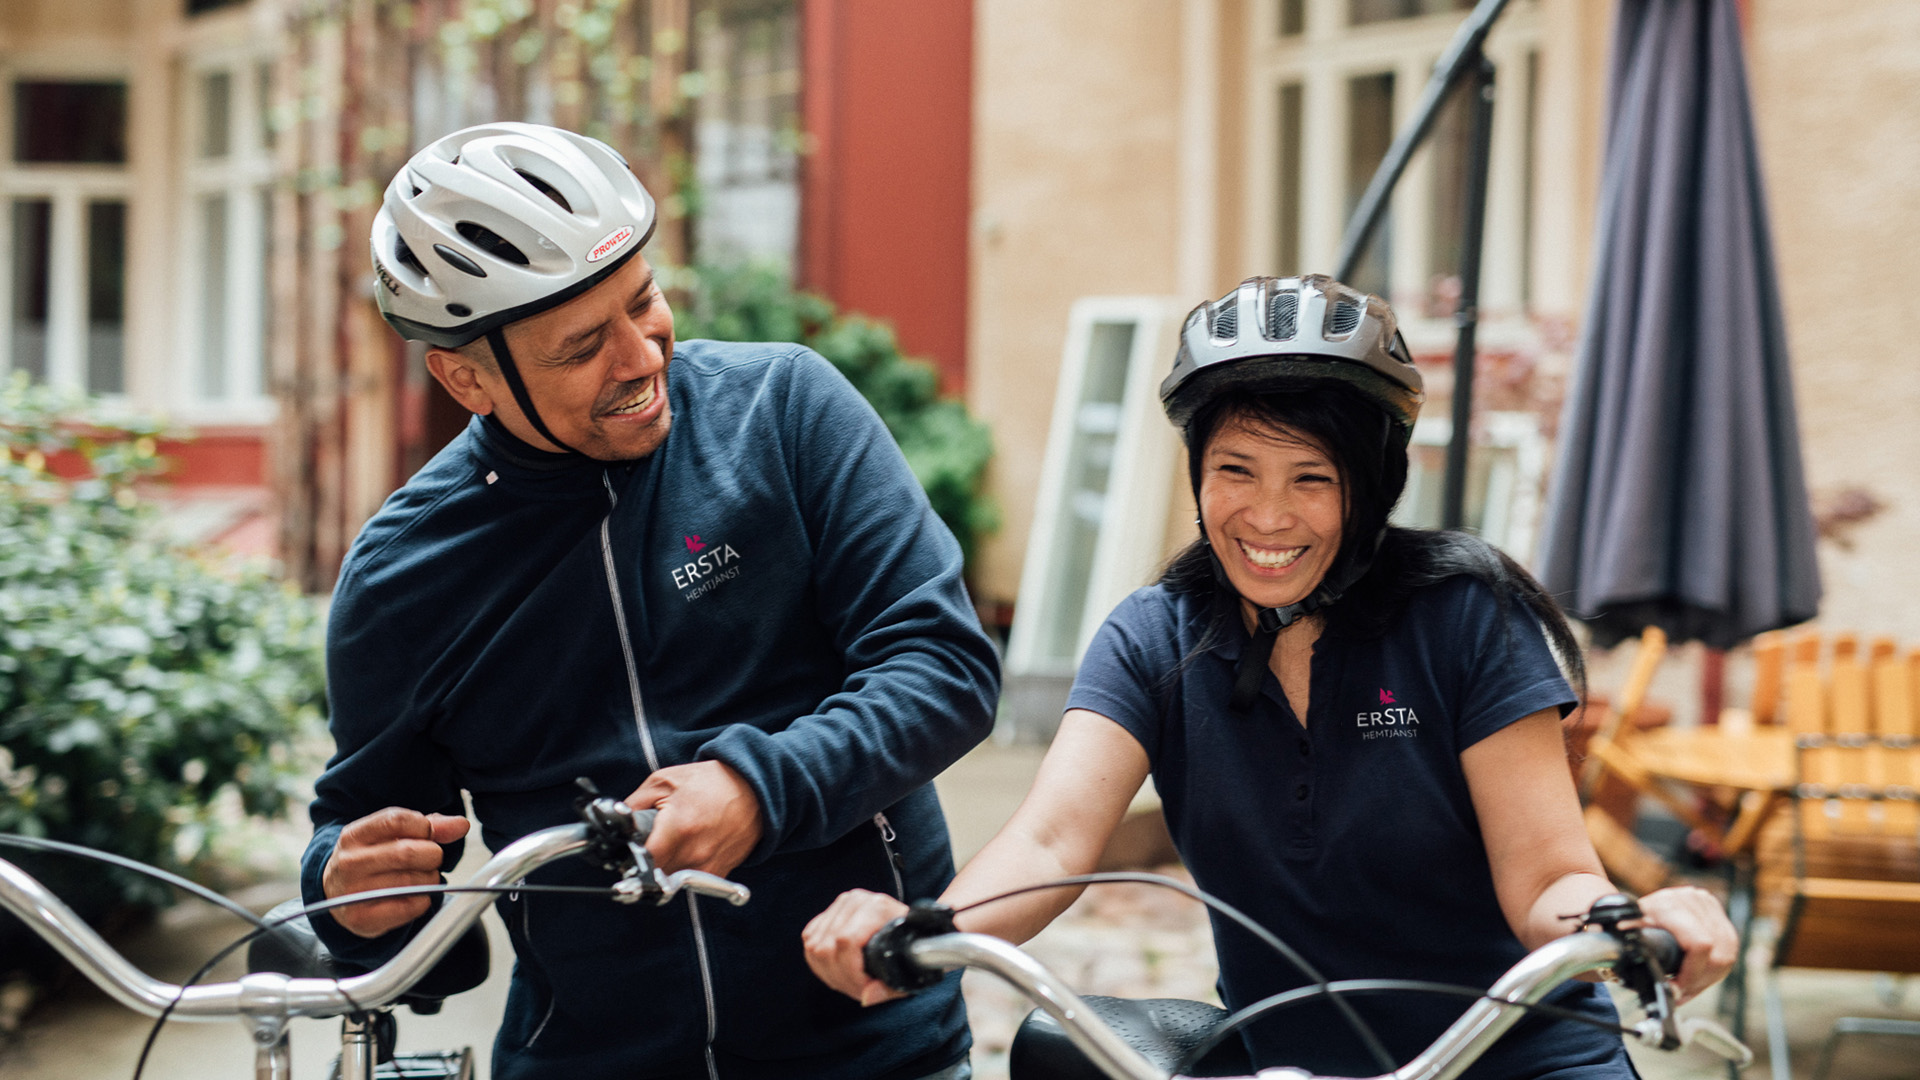 Medarbetare inom Ersta hemtjänst håller varsin cykel och skrattar